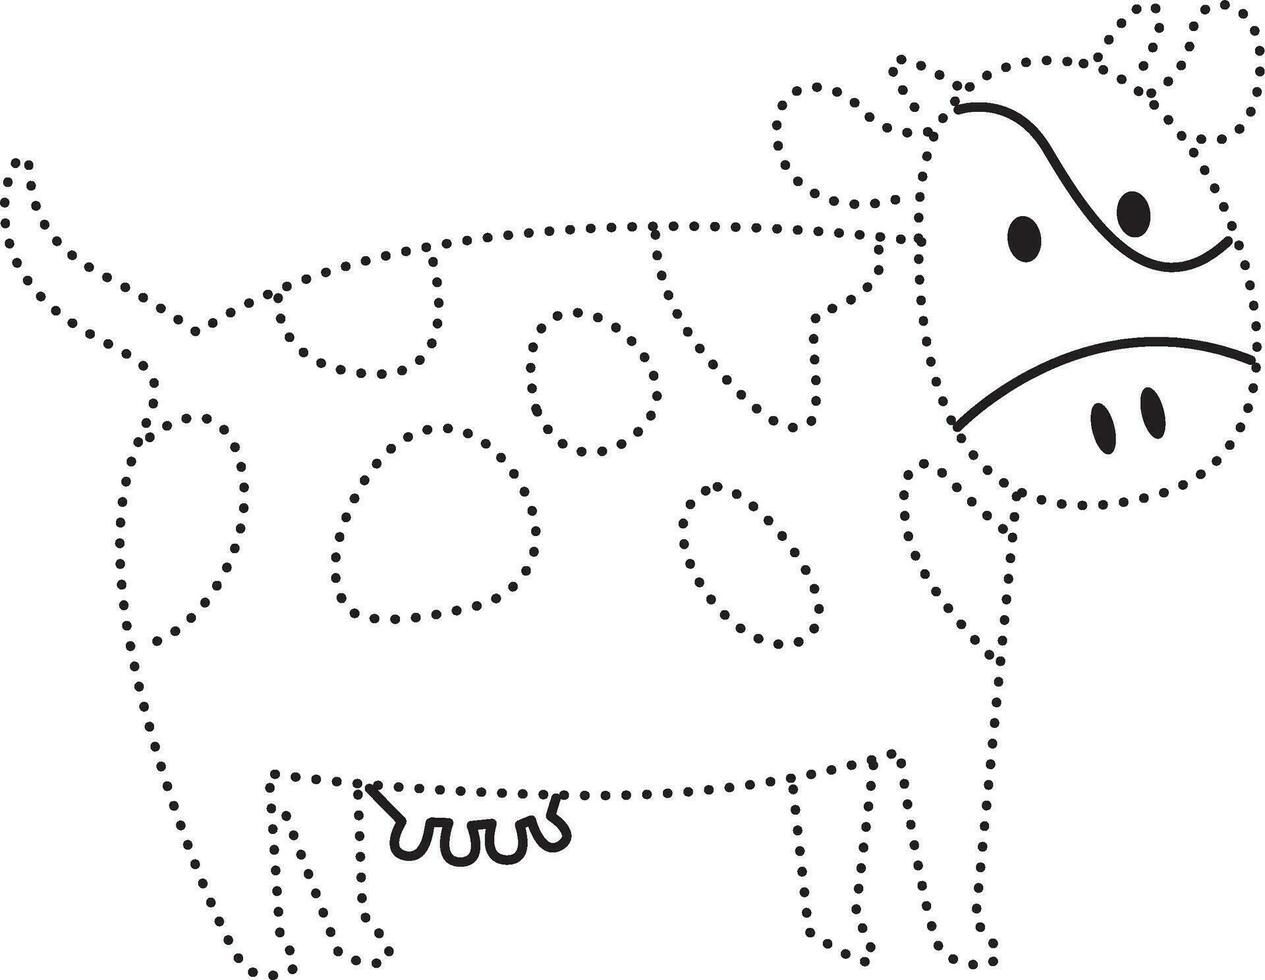 mucca animale tratteggiata linea pratica disegnare cartone animato scarabocchio kawaii anime colorazione pagina carino illustrazione disegno clip arte personaggio chibi manga comico vettore